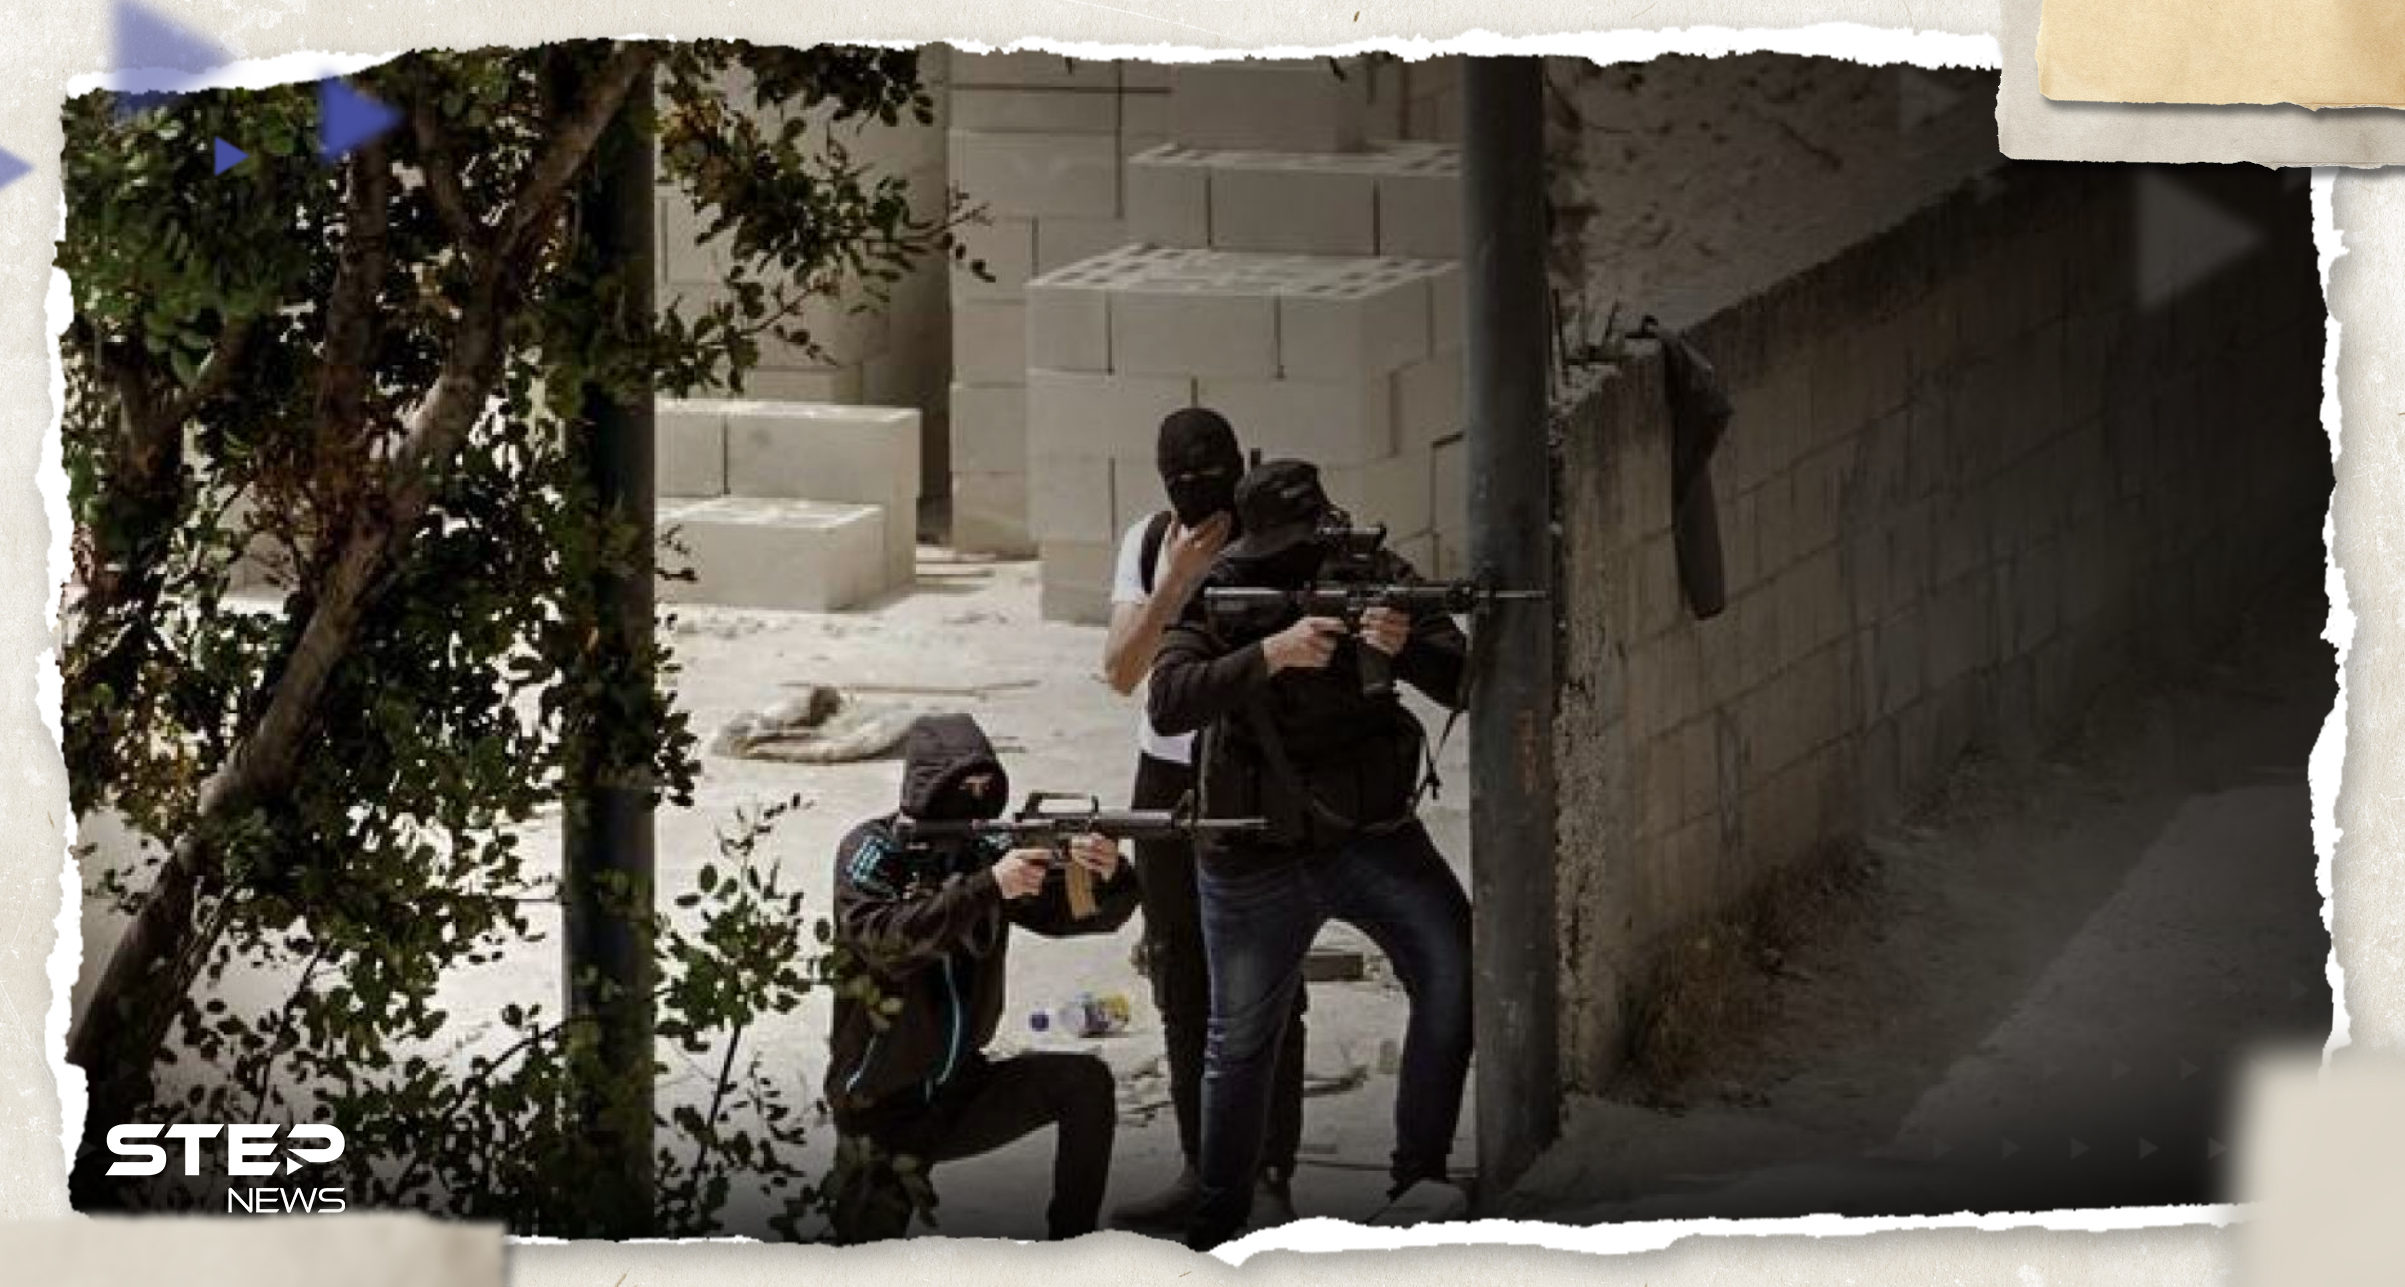 بالفيديو|| جندي إسرائيلي مصاب "ينتقم" من مسلح فلسطيني قبض عليه بعد اشتباكات بطولكرم 